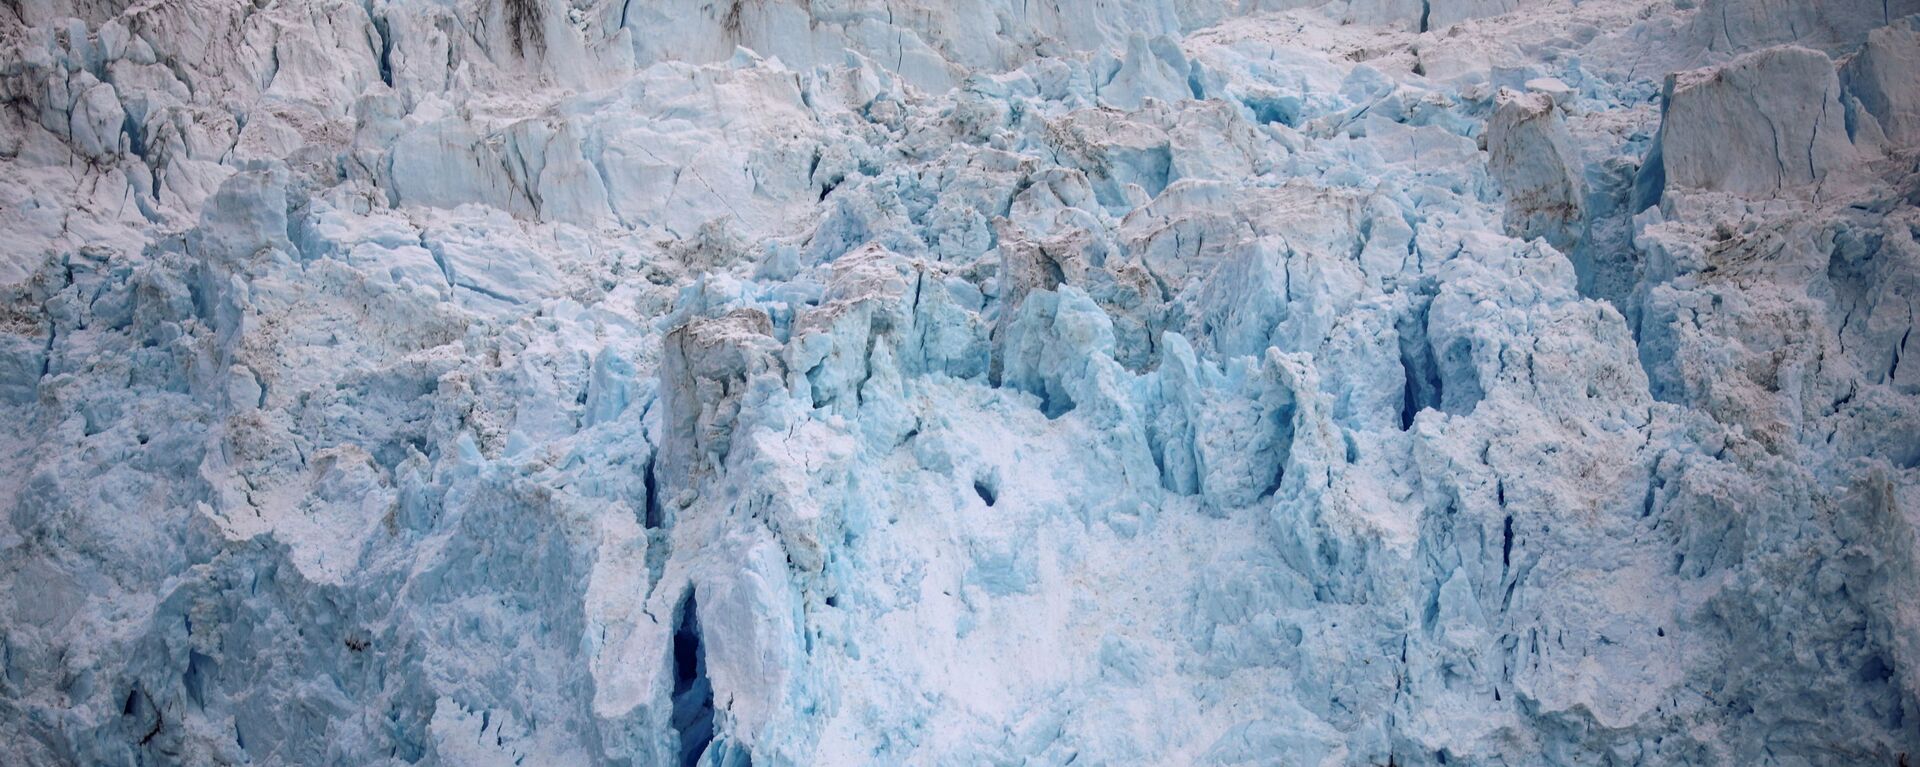 Ледник Экип Сермия в Гренландии - Sputnik Абхазия, 1920, 13.10.2021